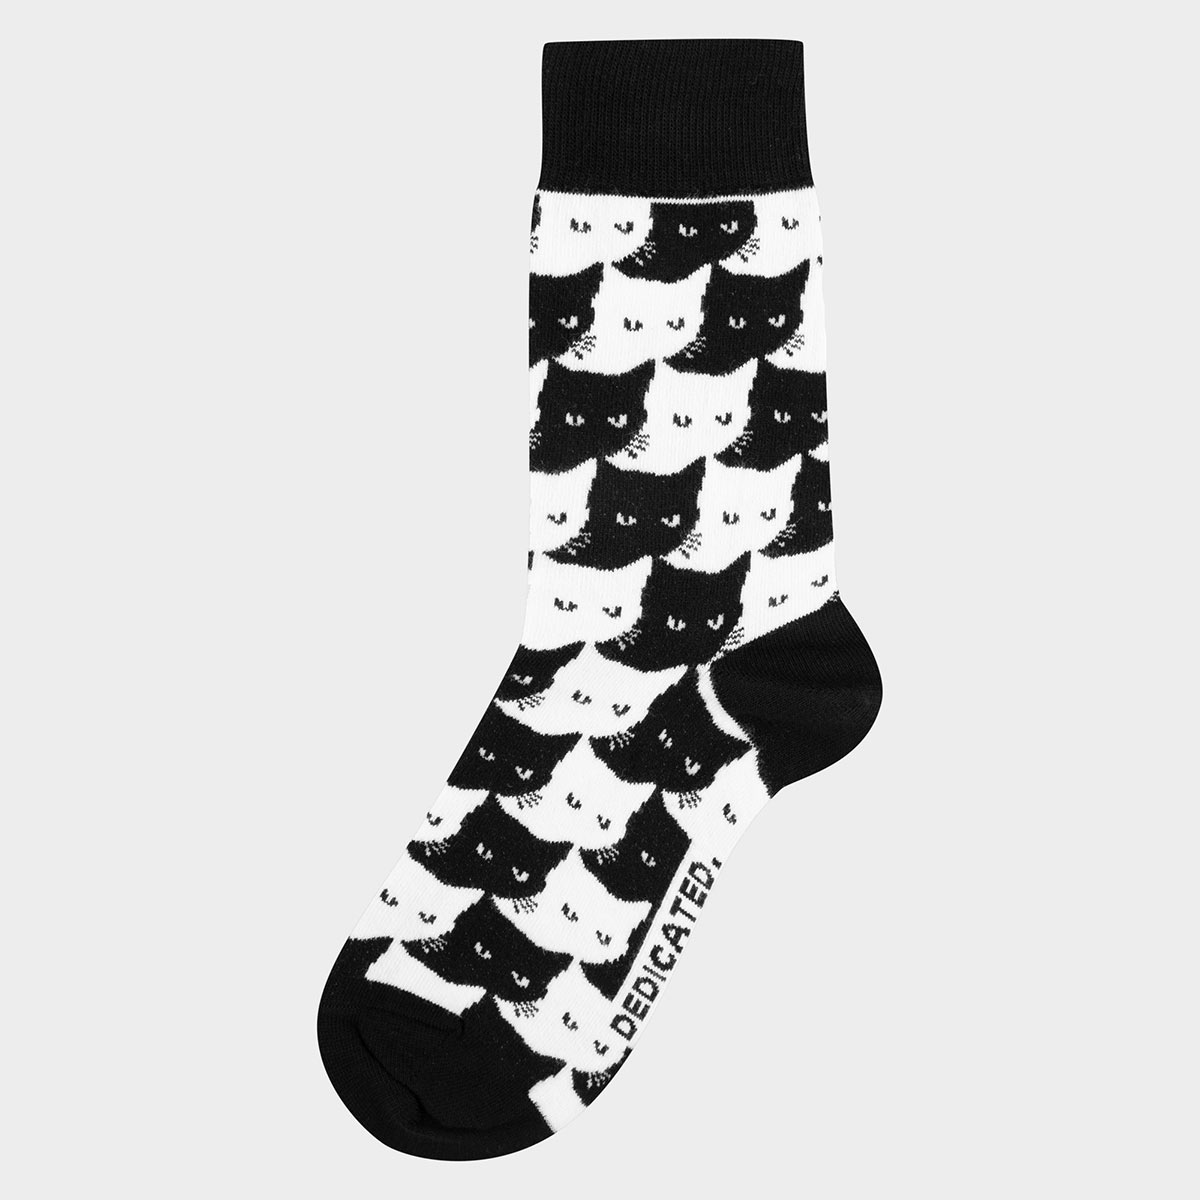 Socken mit Katzen Motiv aus Bio-Baumwolle in Schwarz/Weiß.